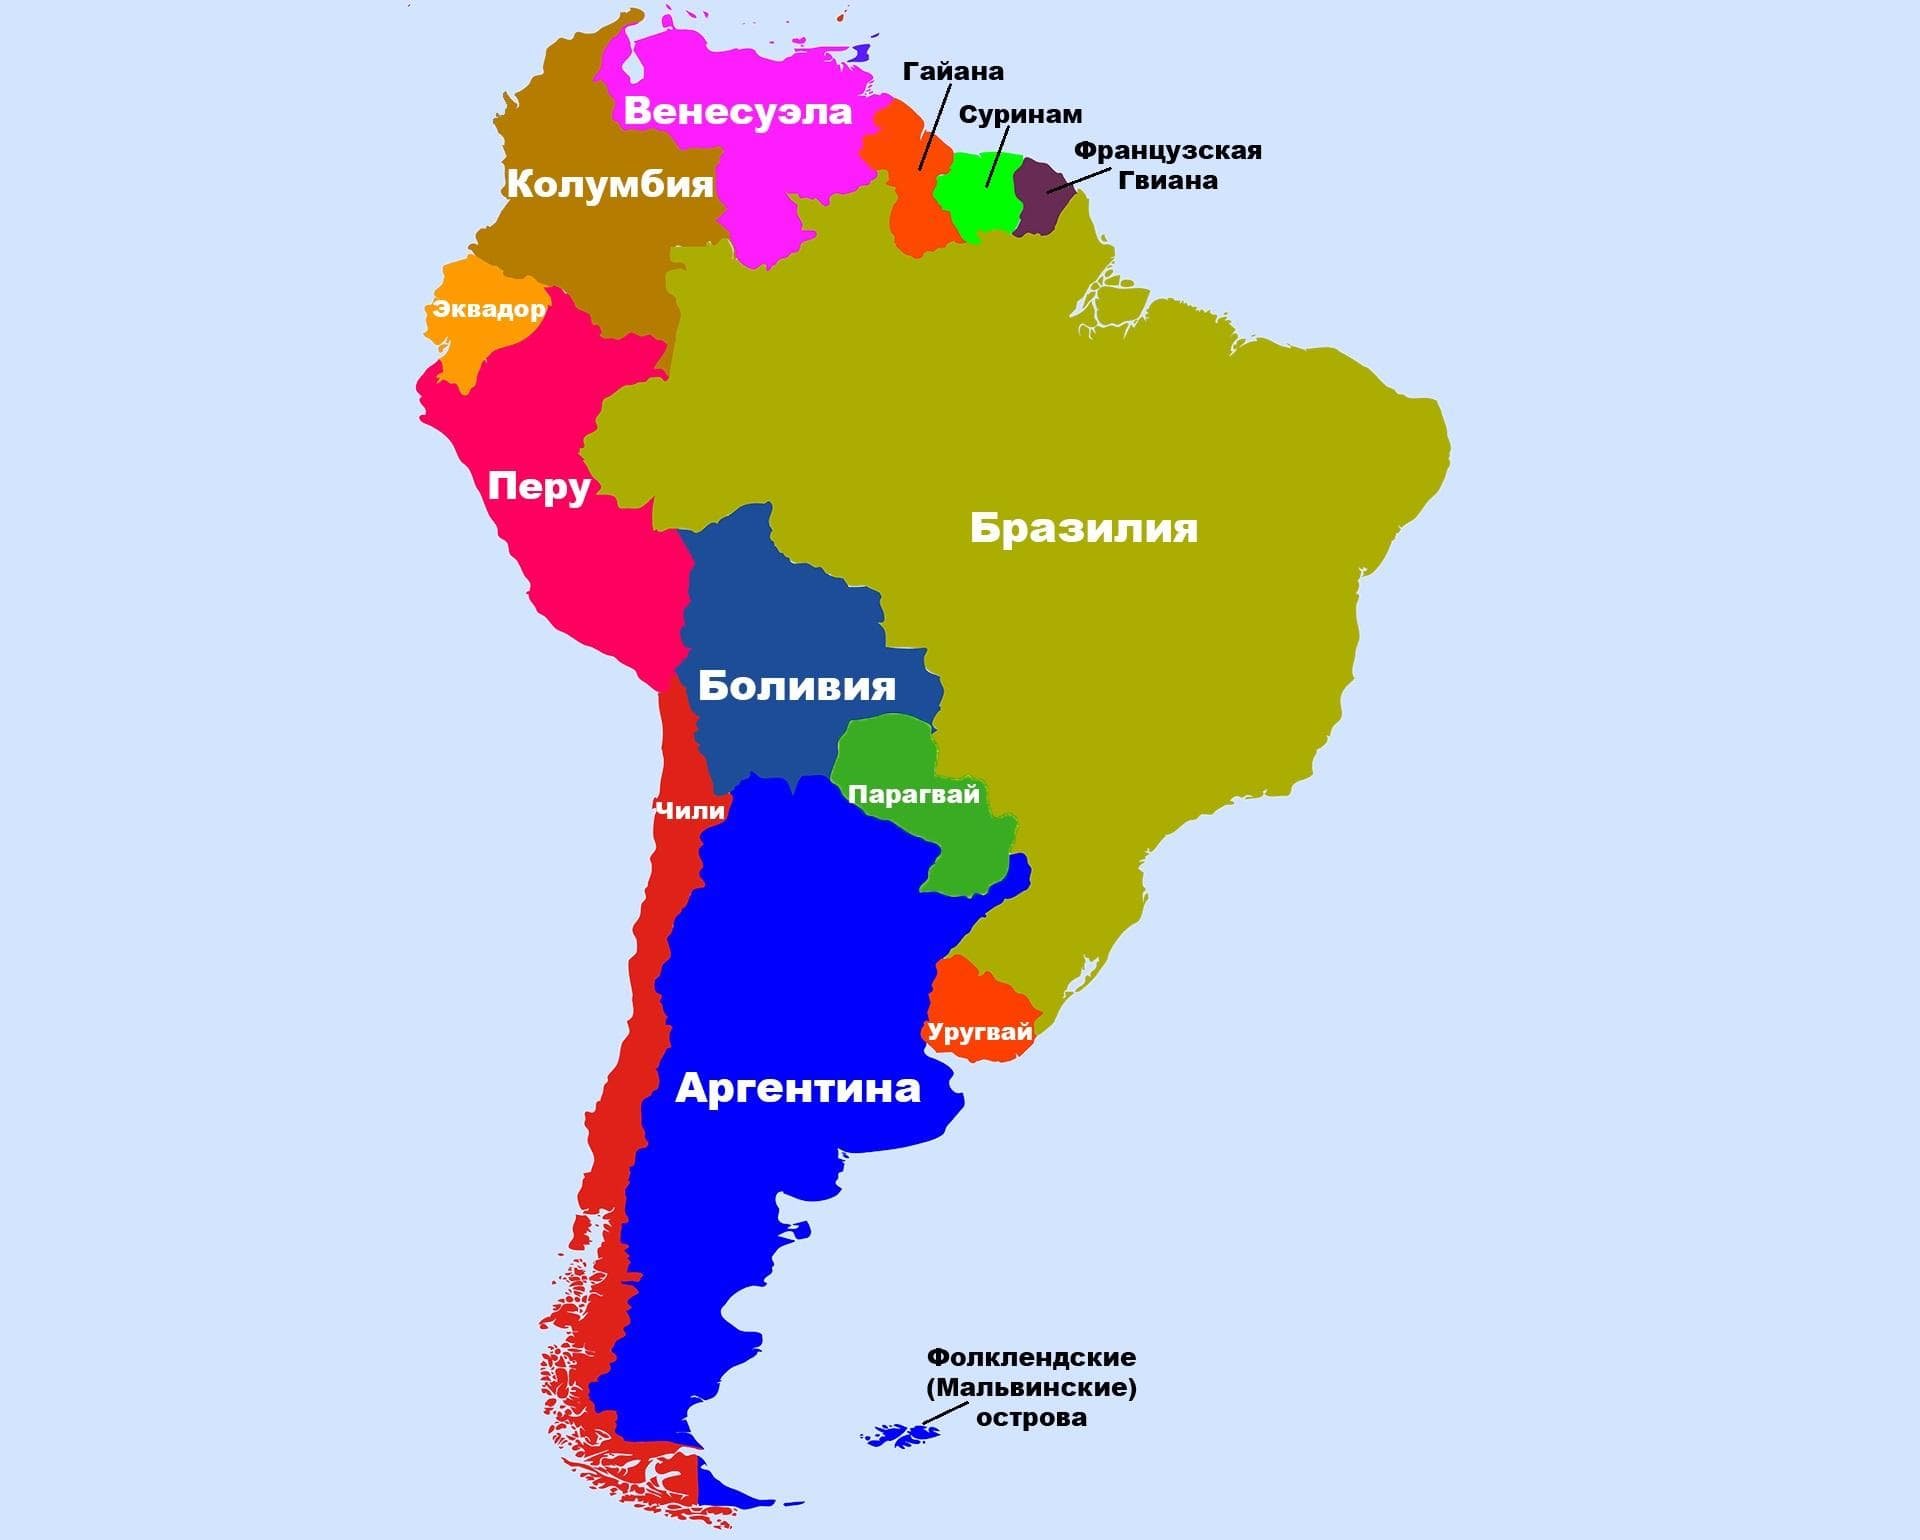 Местоположение южной америки. Карта Южной Америки политическая на русском языке со странами. Южная Америка на карте со странами и столицами на русском. Политическая карта Южной Америки со столицами. Южная Америка политическая карта на русском.